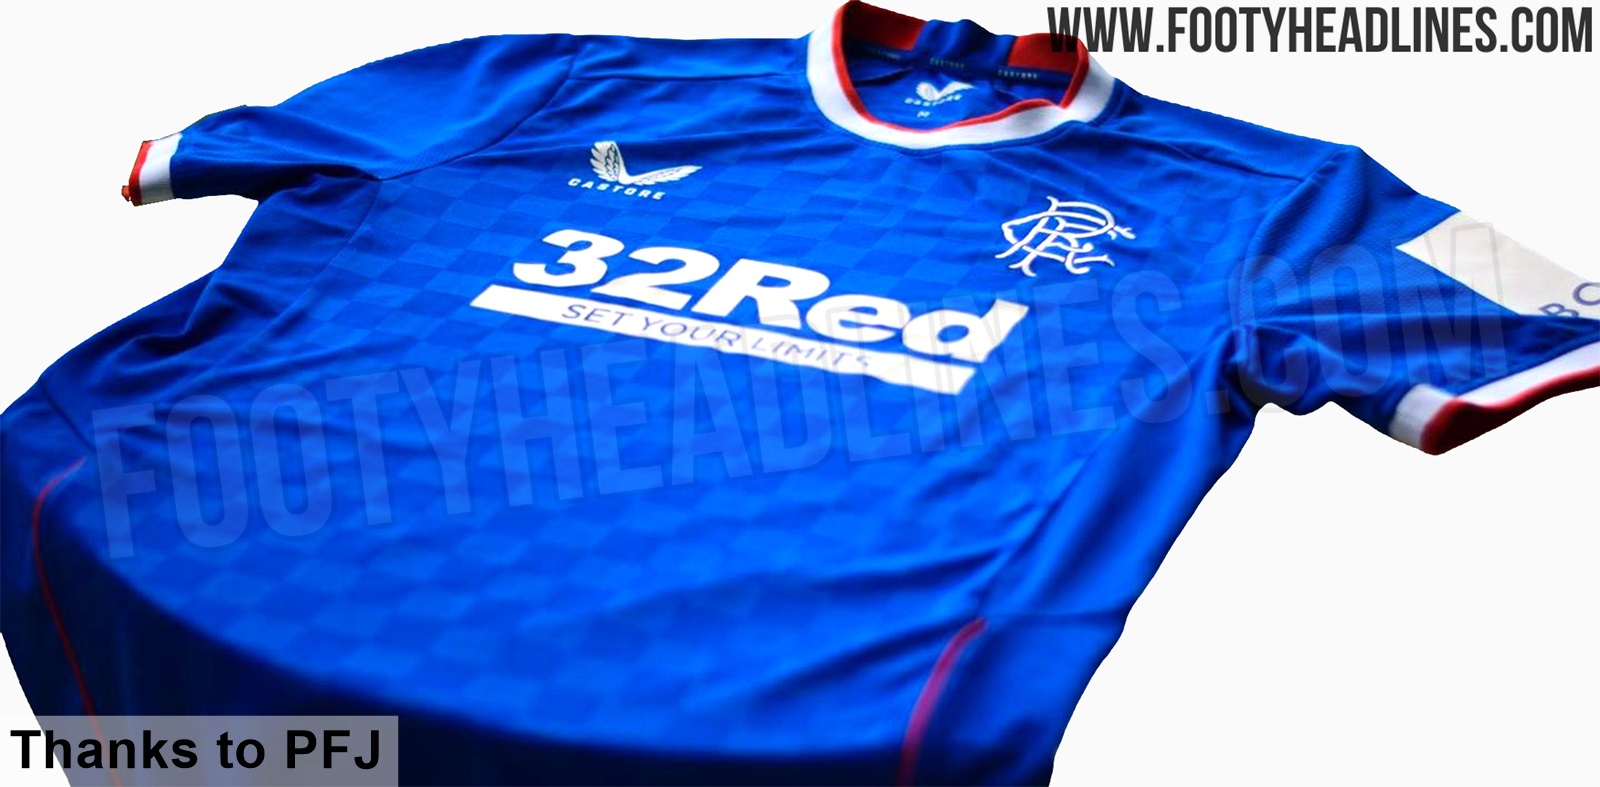 Rangers 22-23 Away/Third Kit Leaked - Footy Headlines